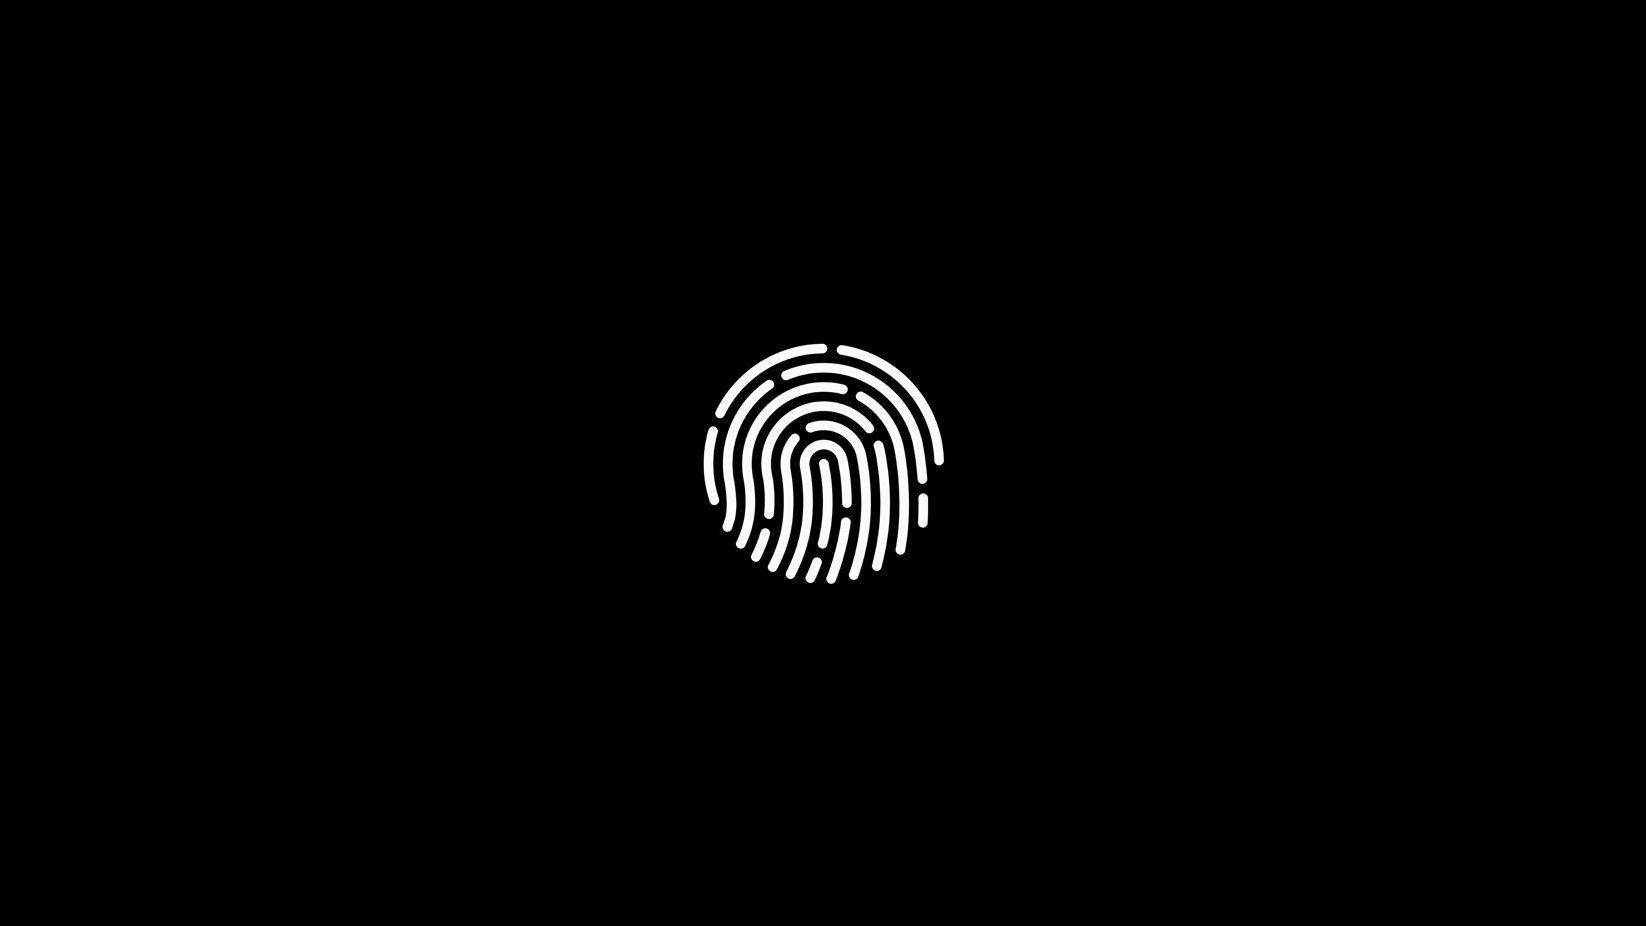 Simple Black Circular Fingerprint Scan Wallpaper